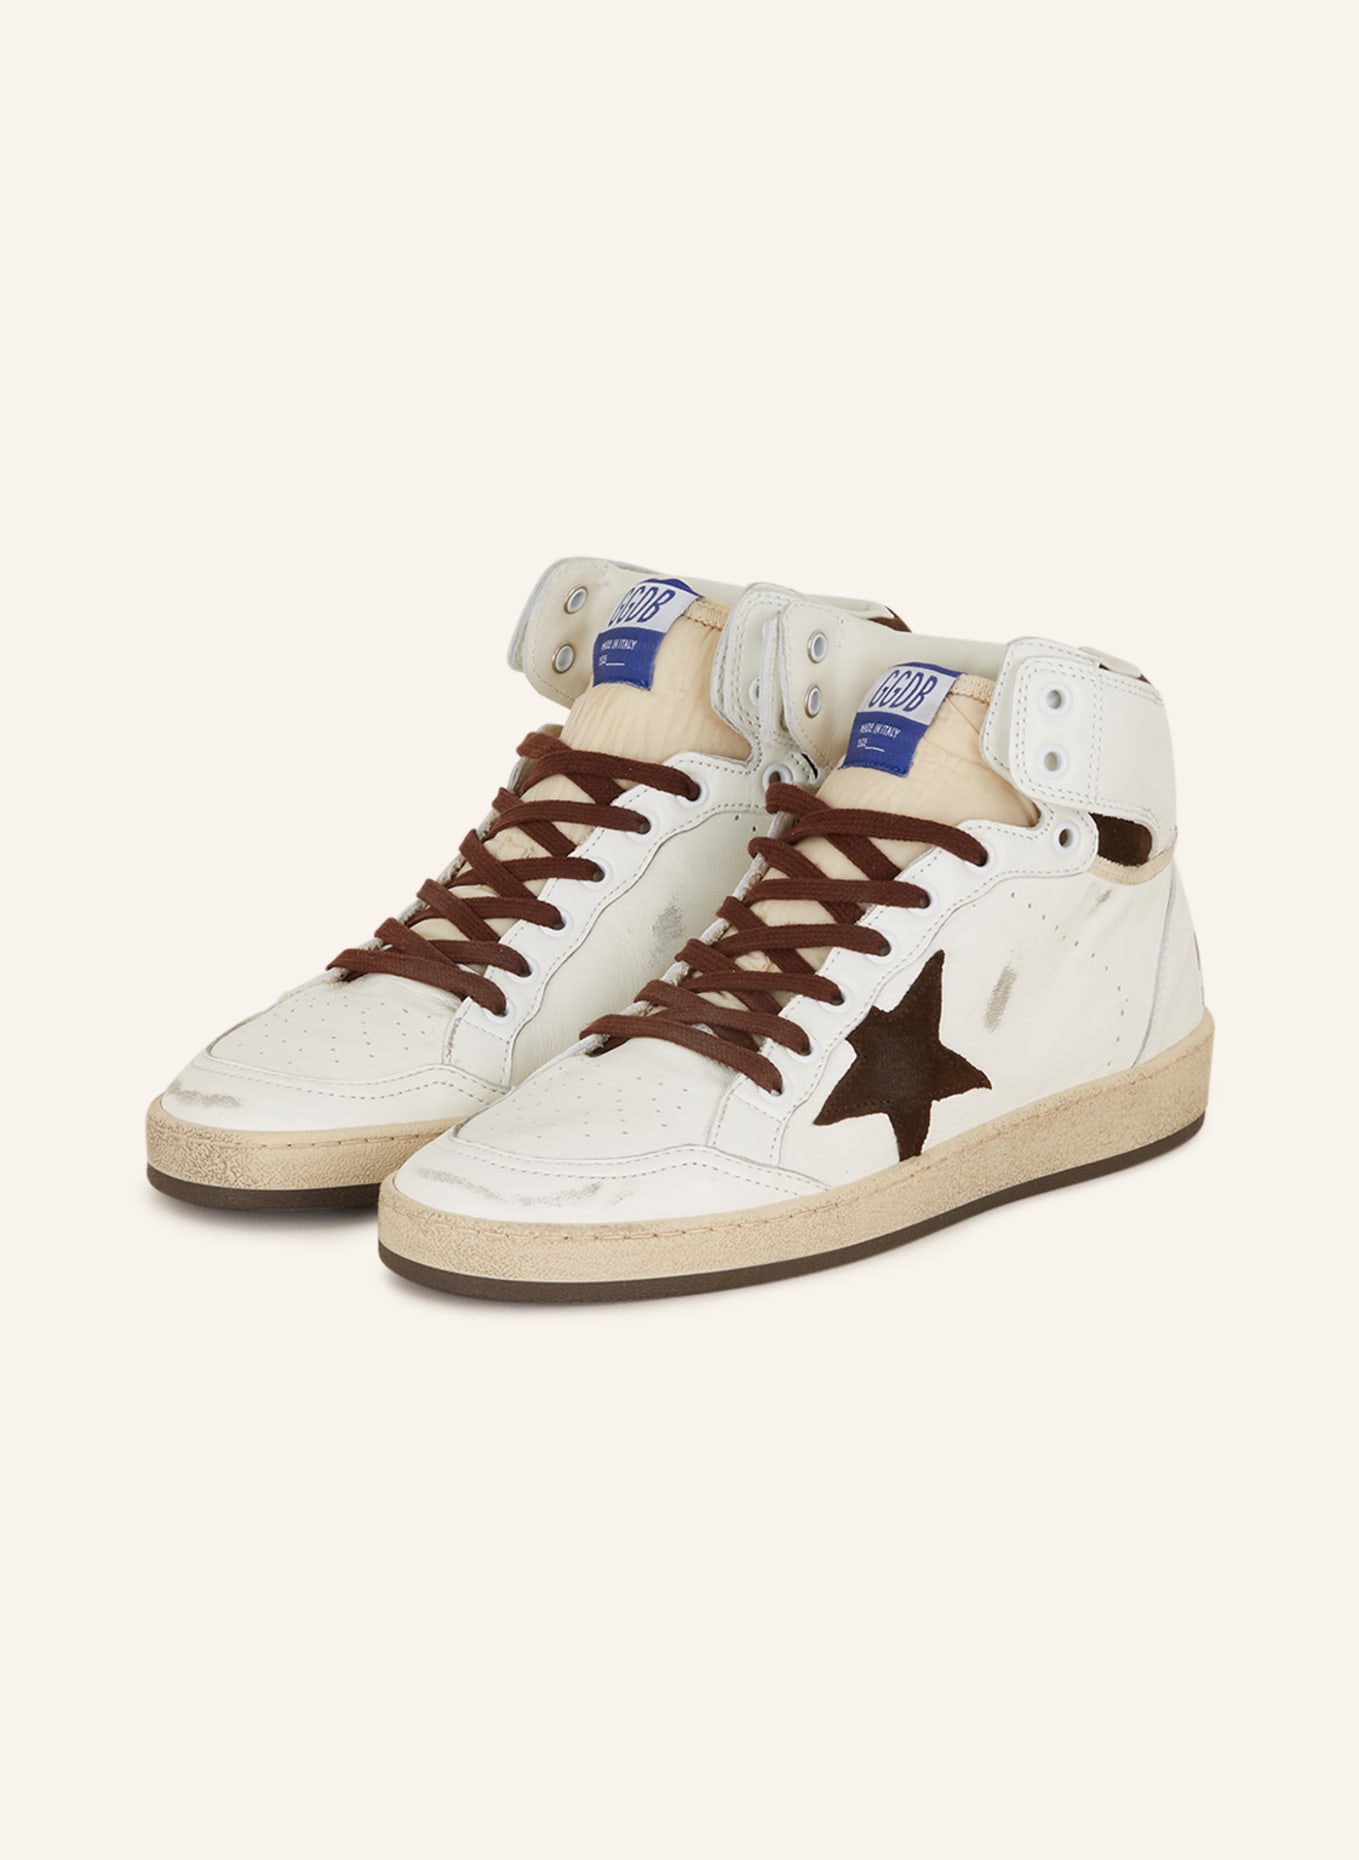 GOLDEN GOOSE Hightop-Sneaker SKY STAR, Farbe: WEISS/ DUNKELBRAUN (Bild 1)